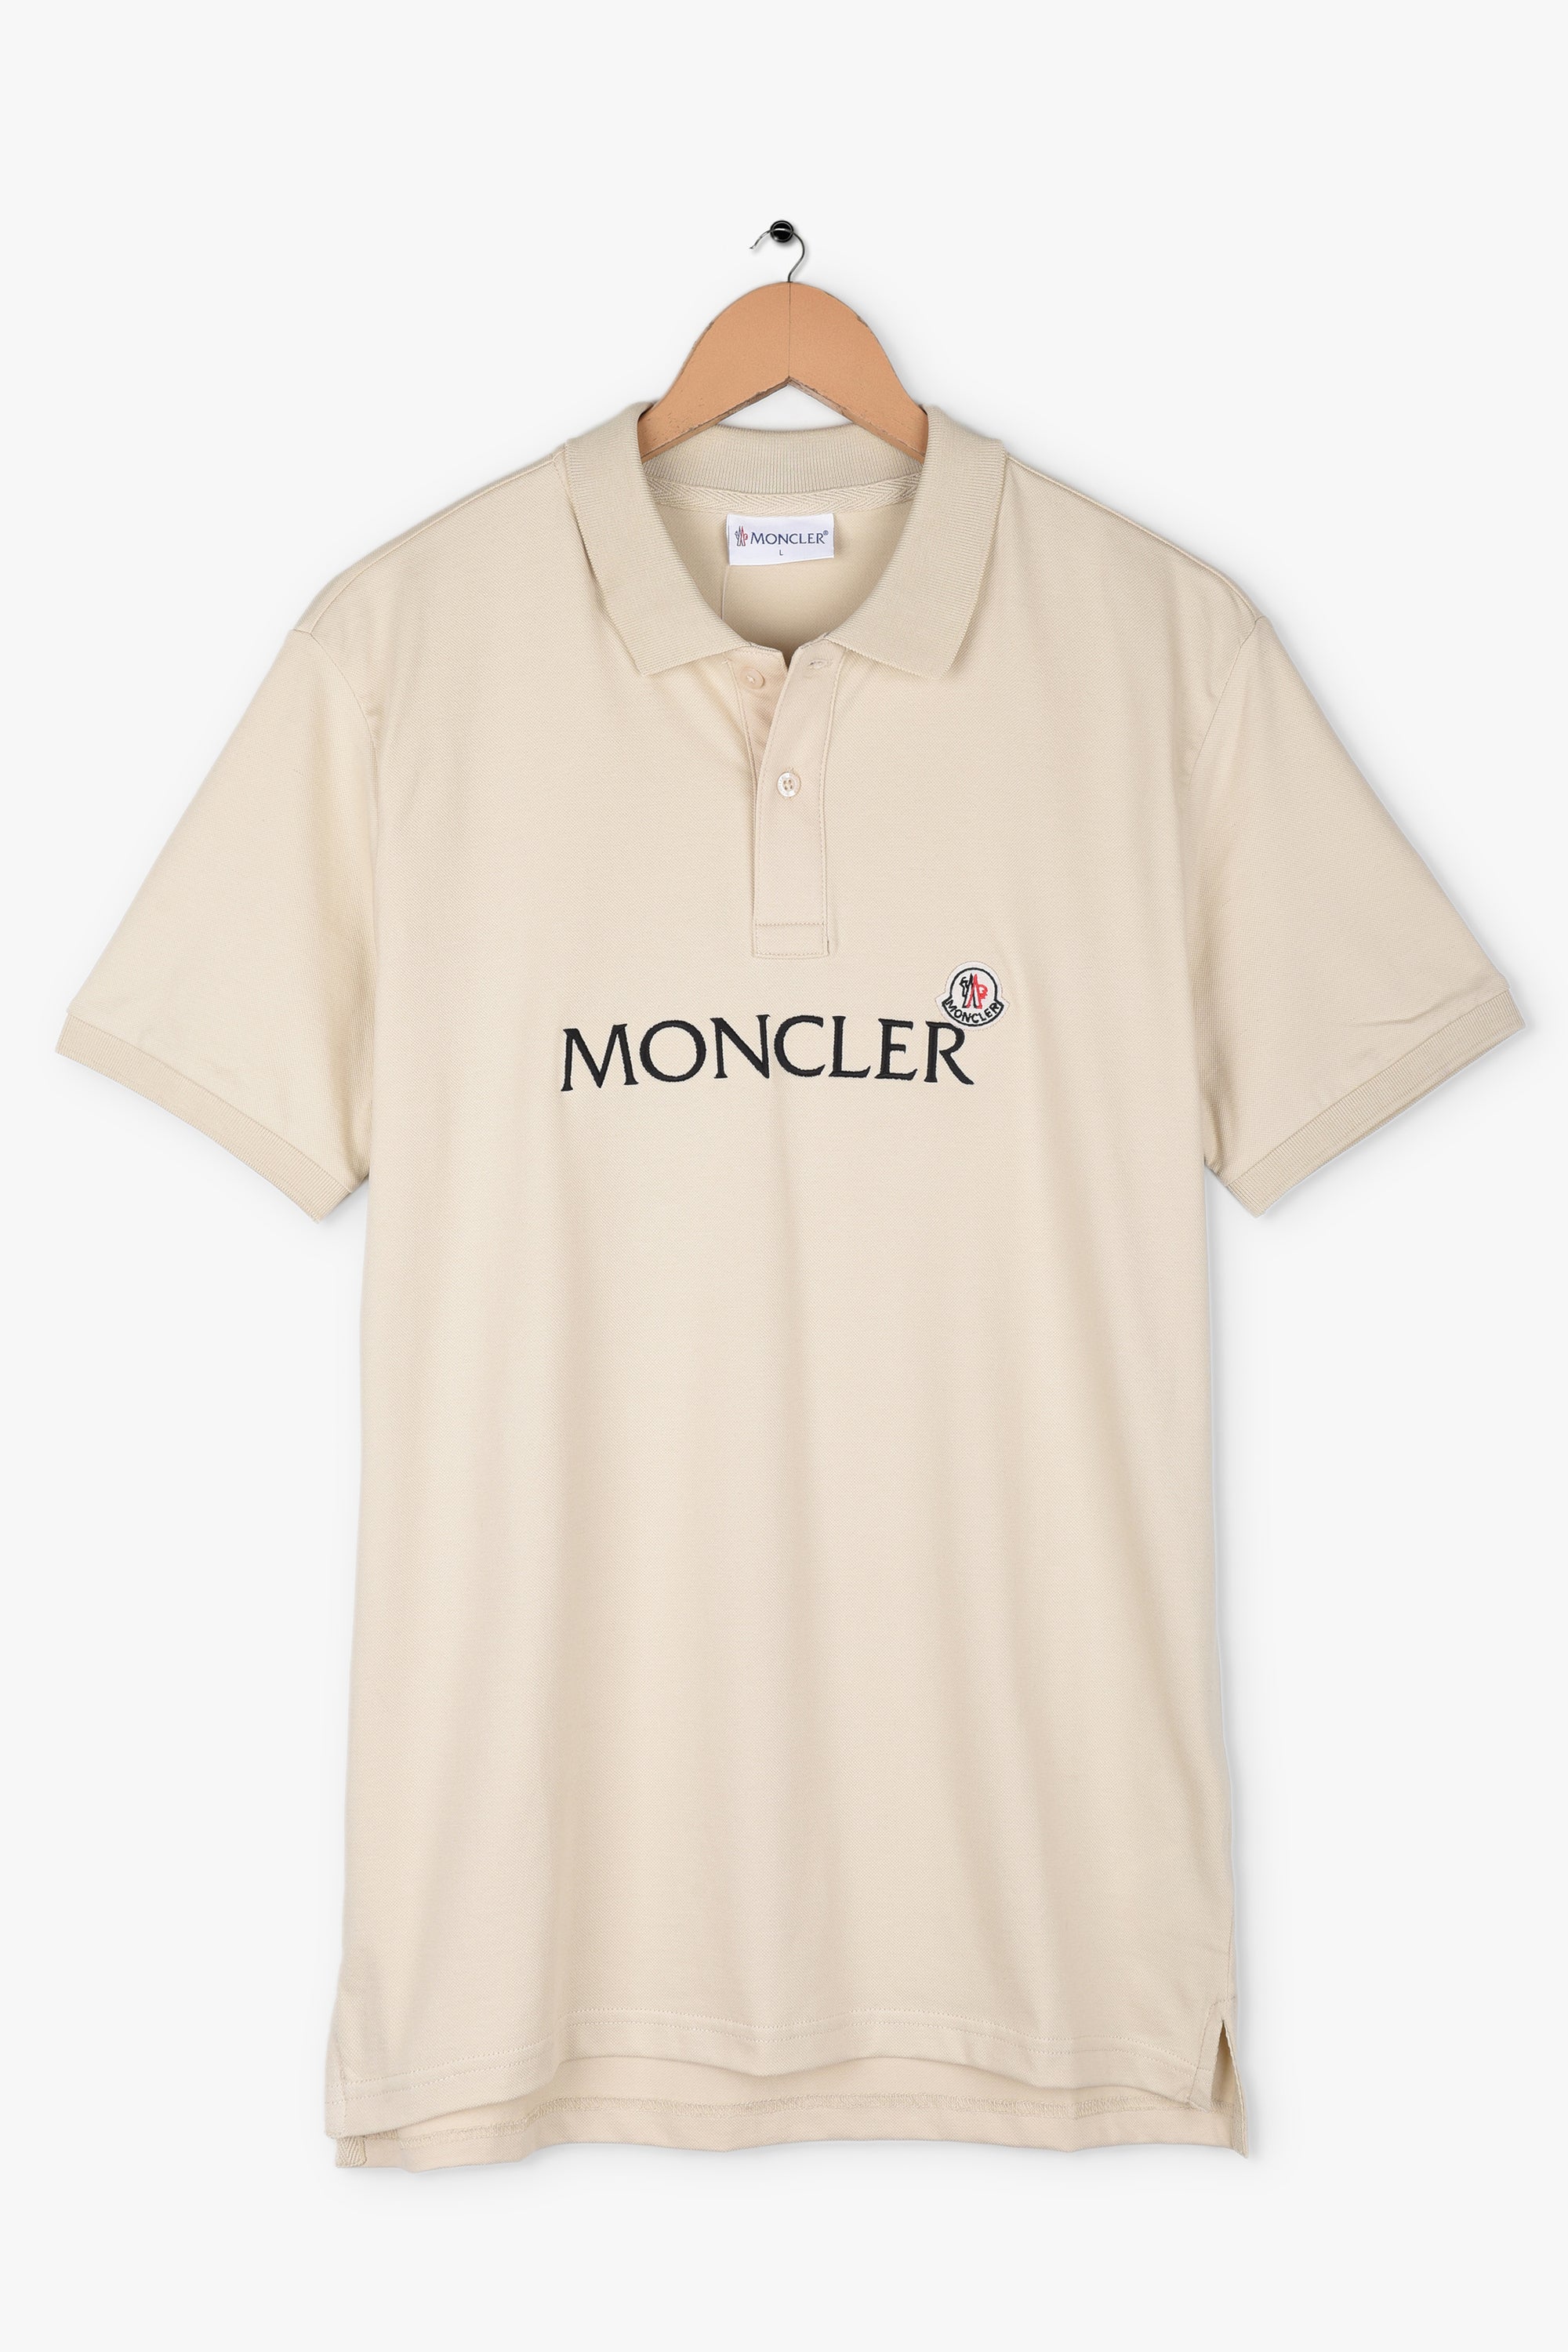 Moncler Embroidered Logo polo shirt